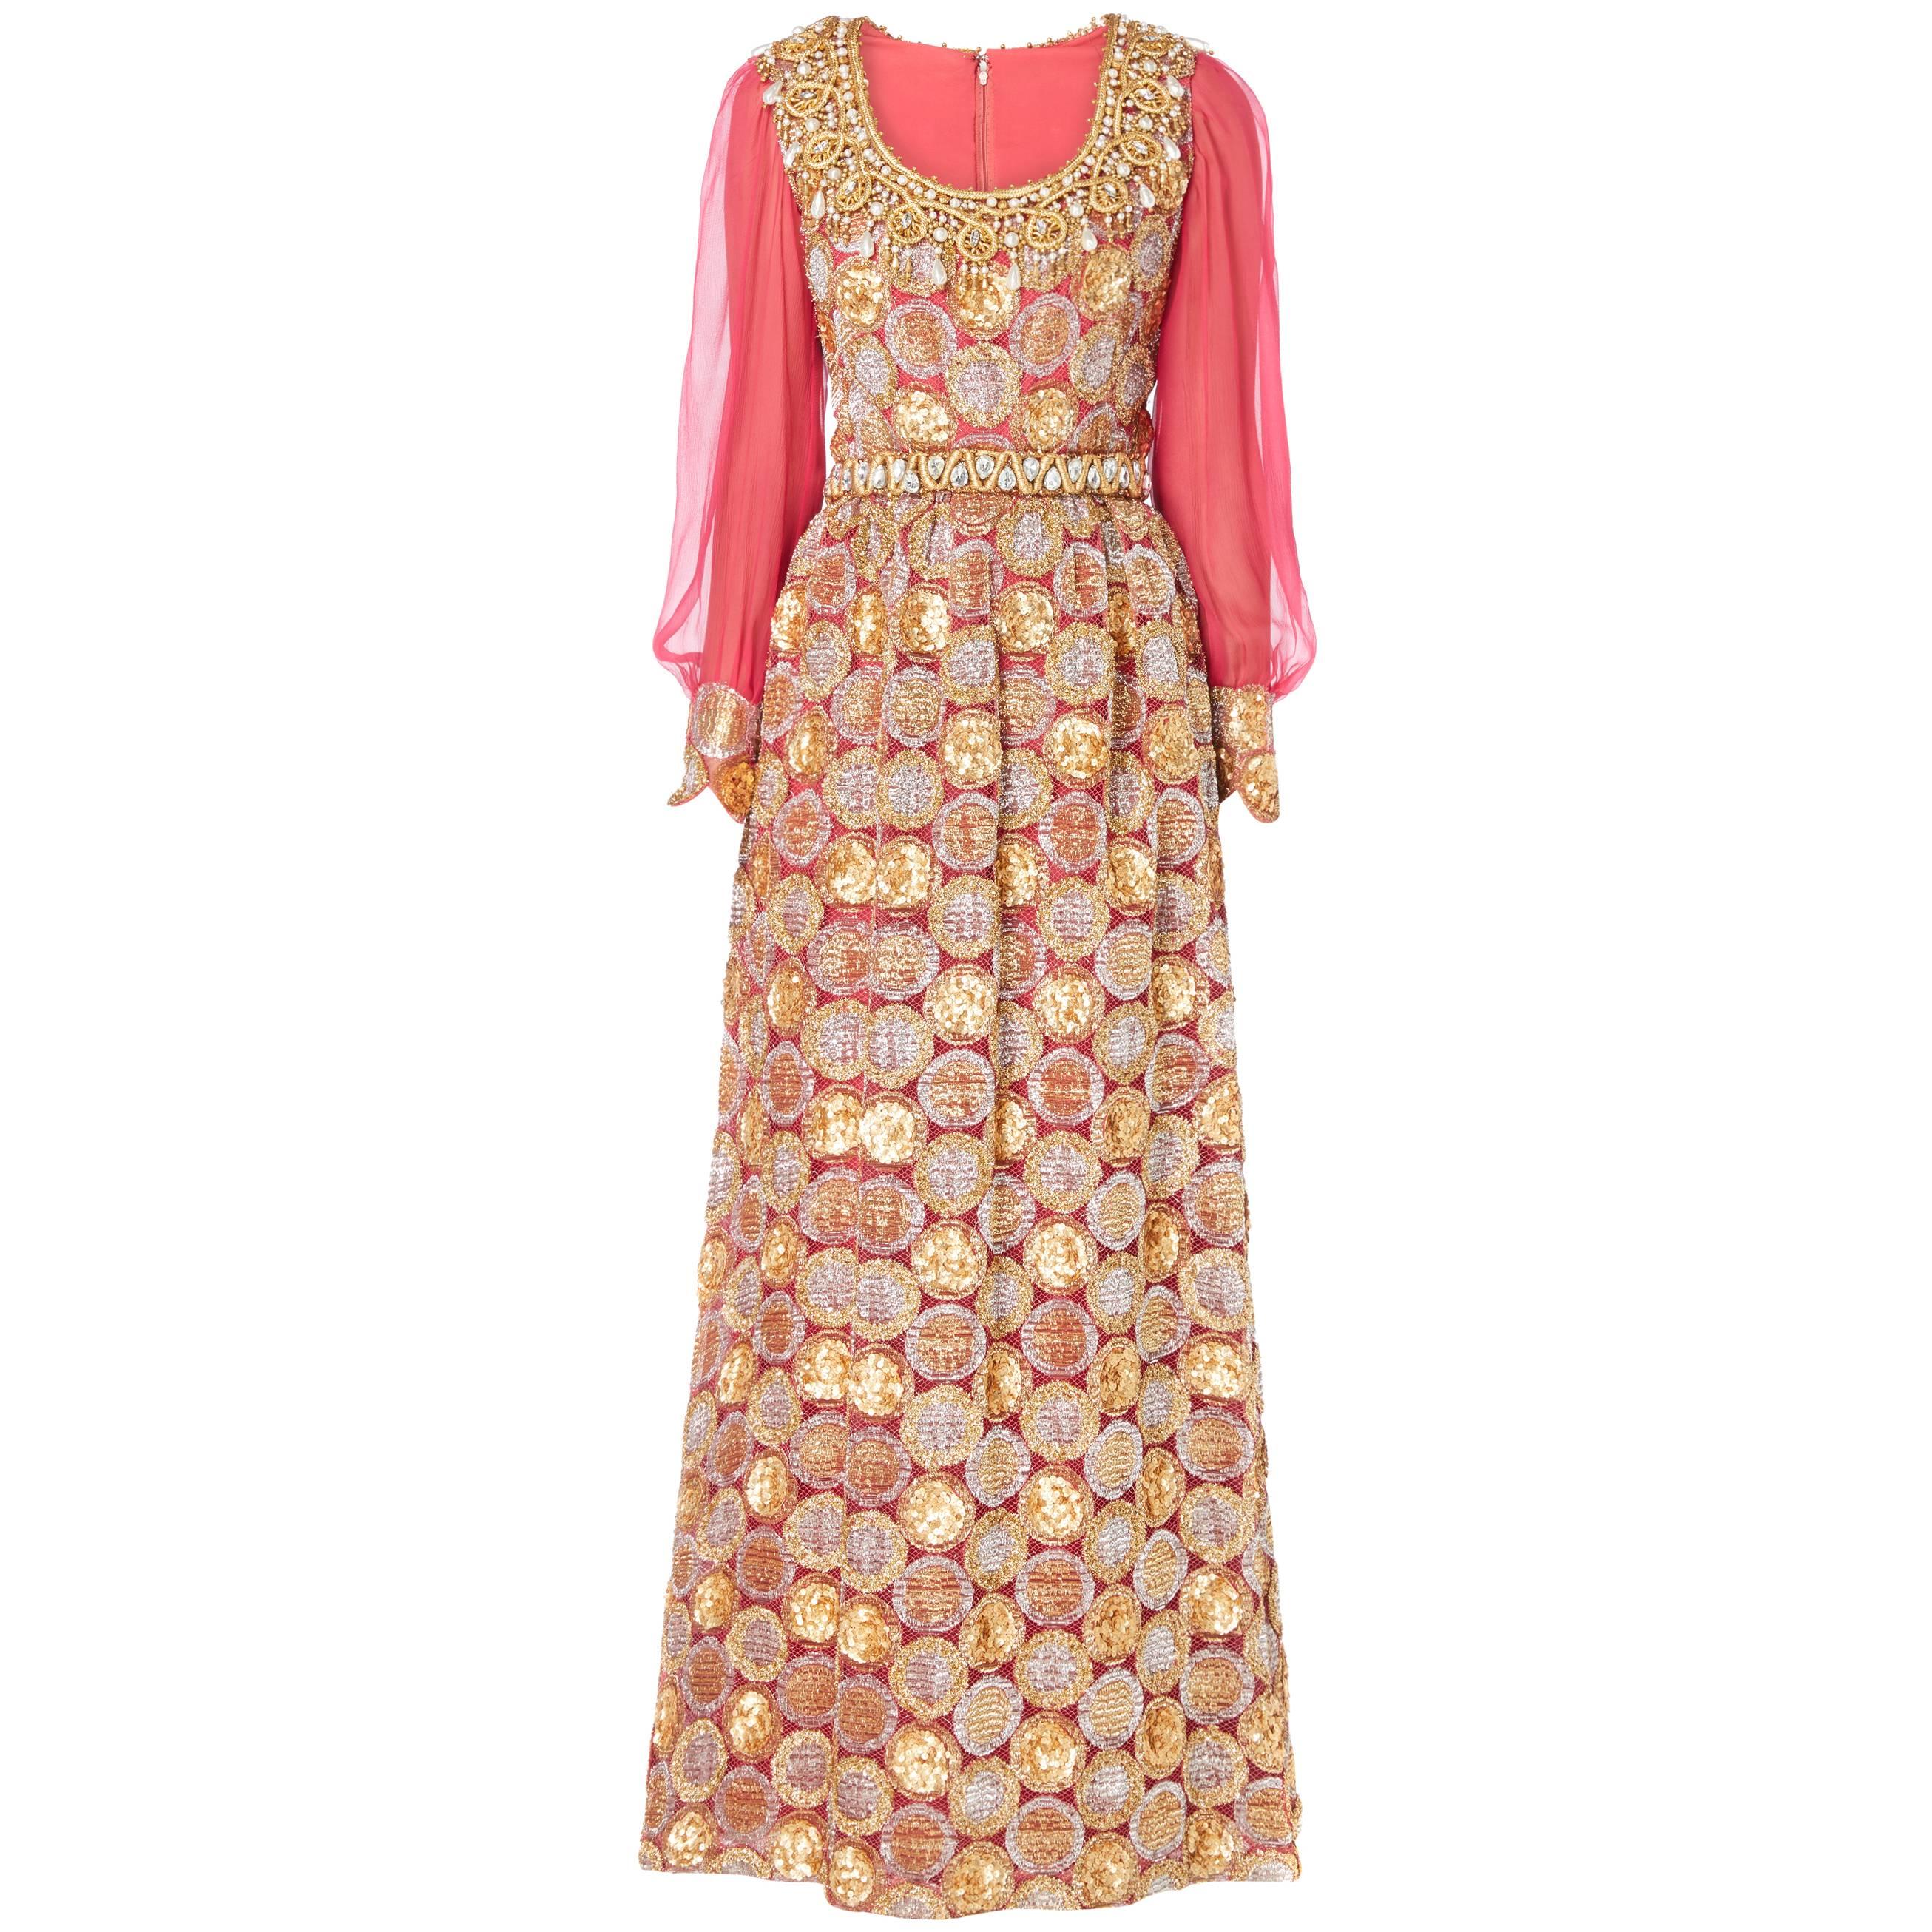 Oscar de la Renta pink and gold dress, Circa 1968 For Sale